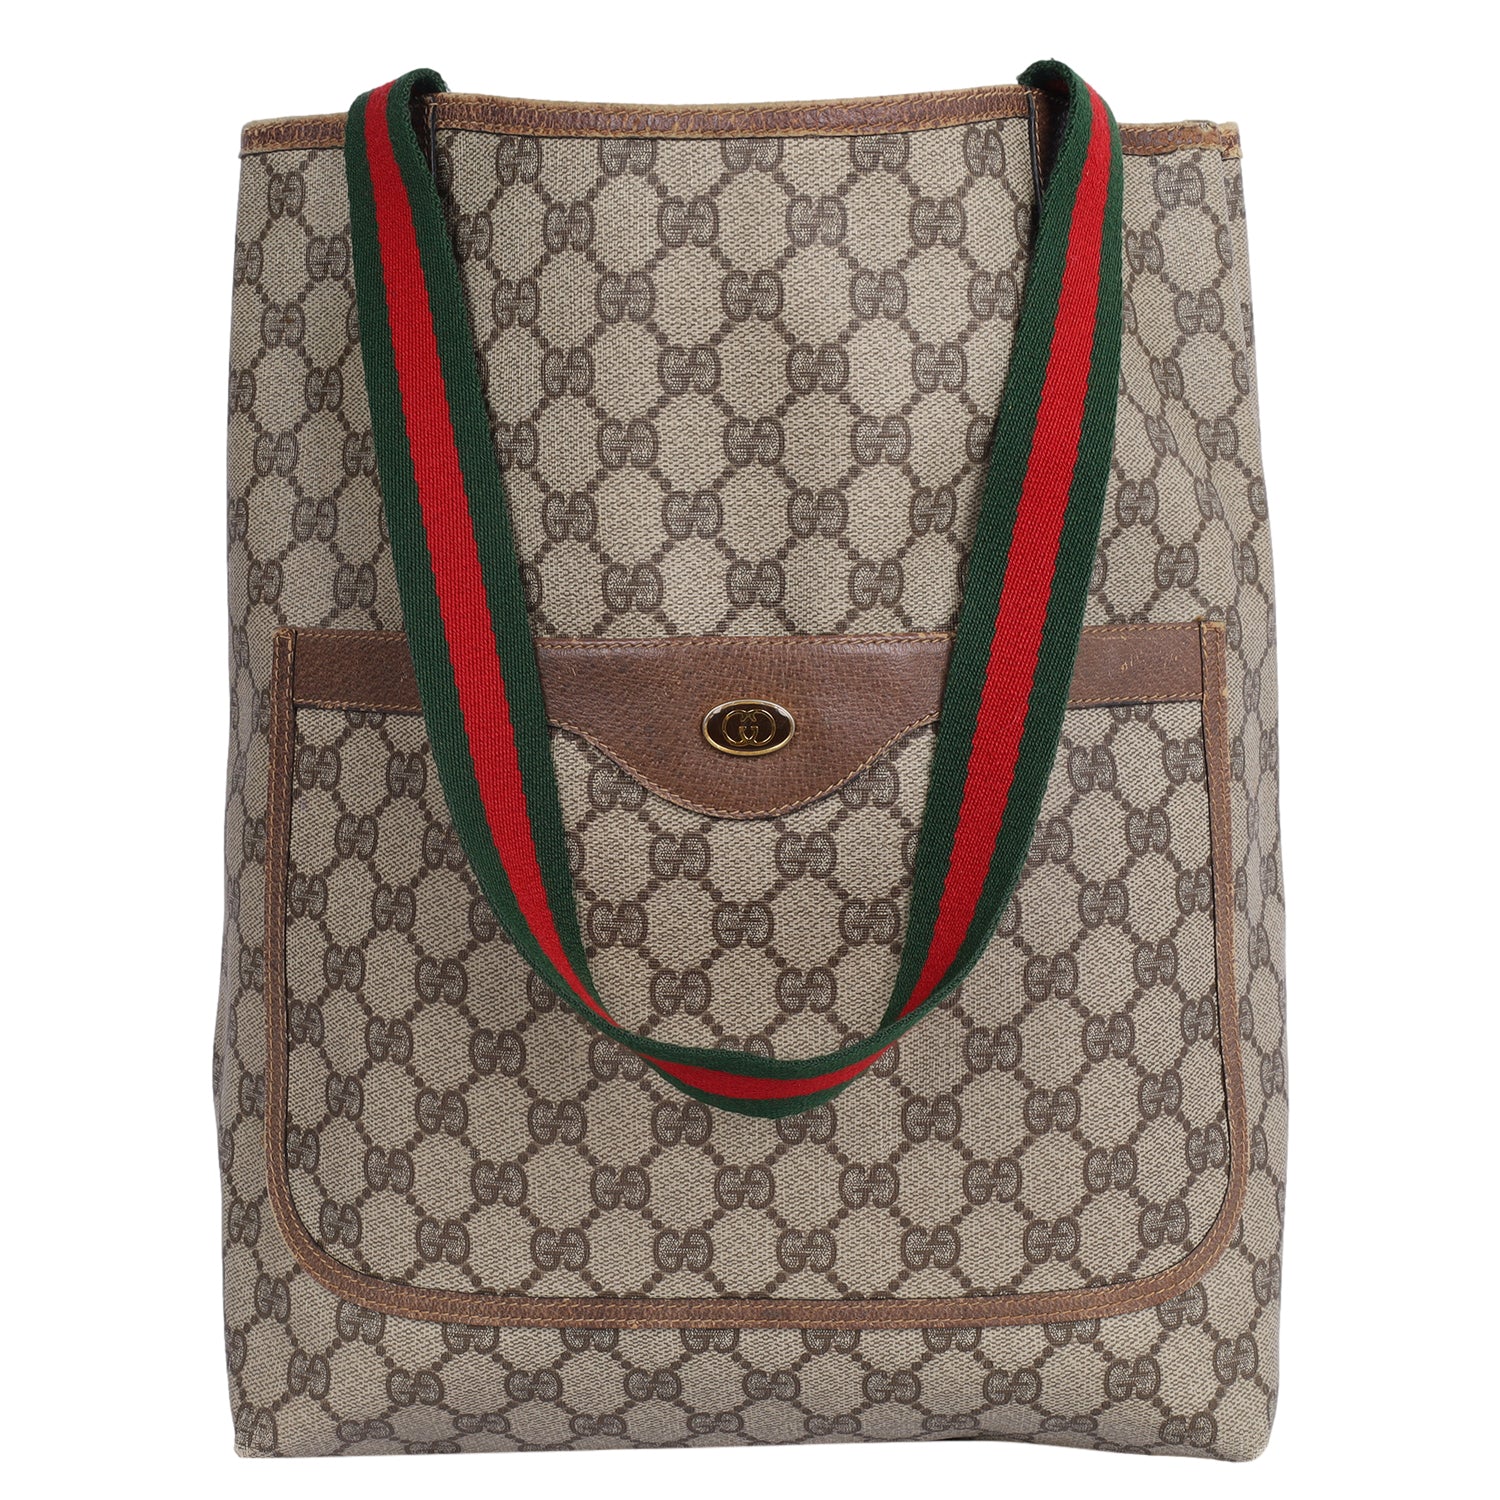 Gucci Vintage GG Supreme Monogram Hobo Bag Brown